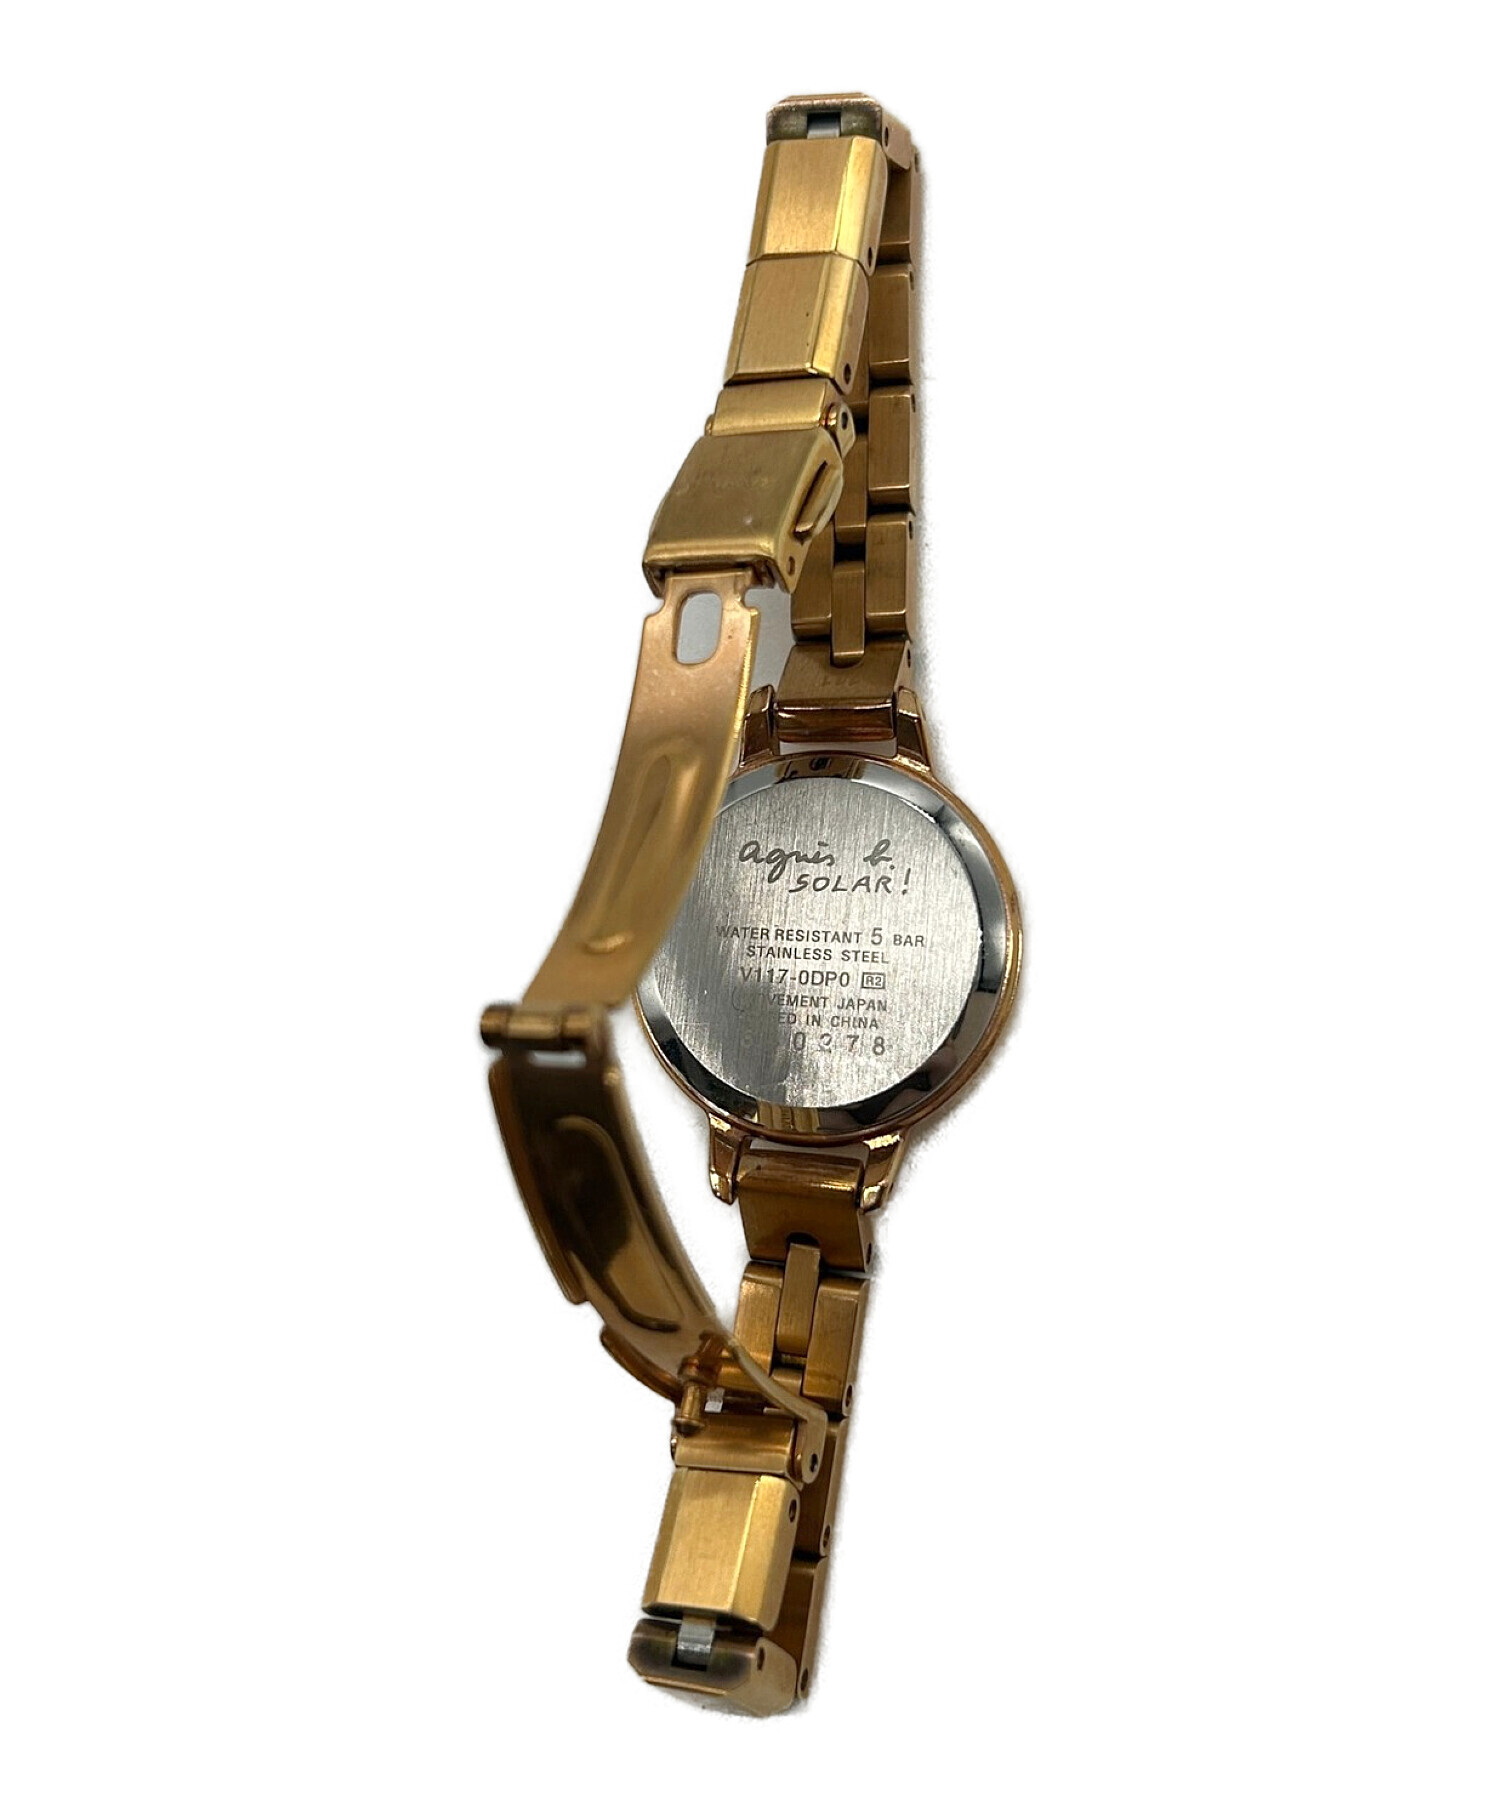 ムーブメントソーラーagnes b. アニエスベー レディース 腕時計 V117-0DP0